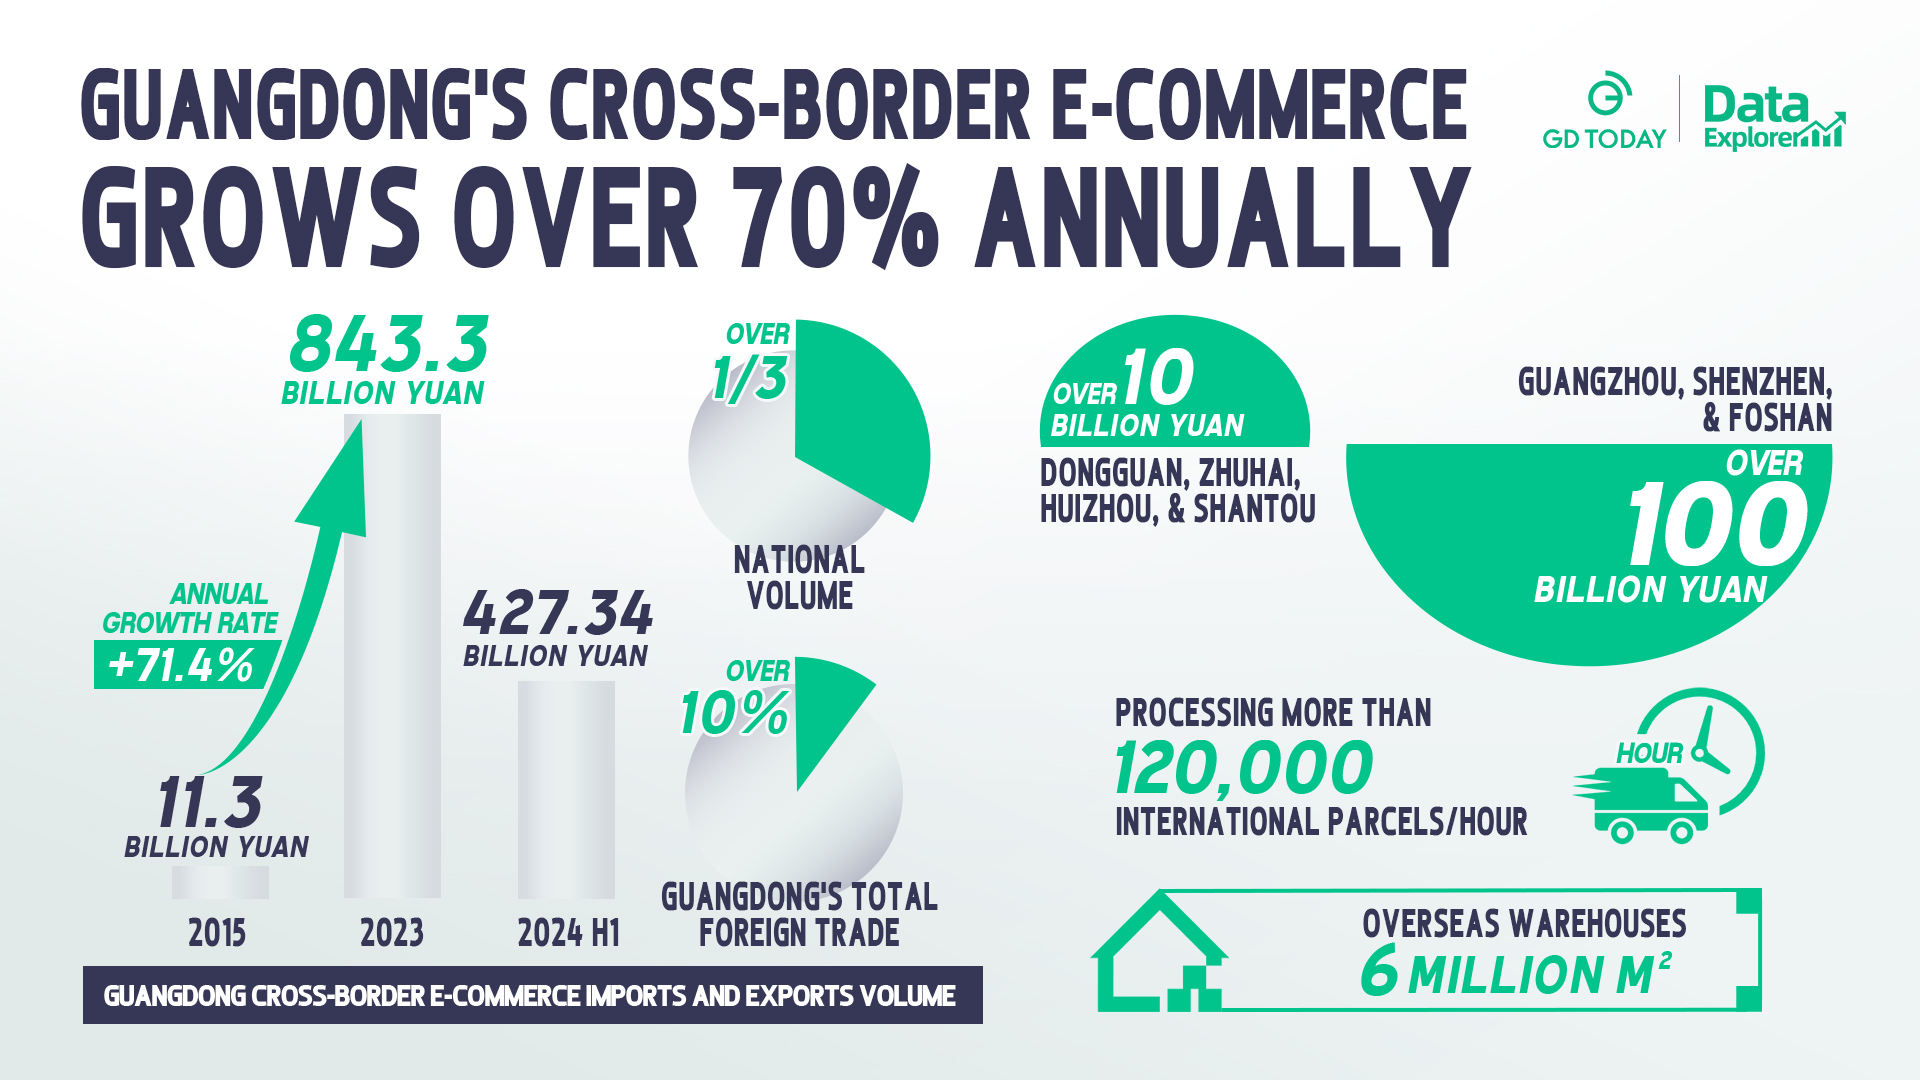 Data Explorer丨Guandgong's cross-border e-commerce grows over 70% annually